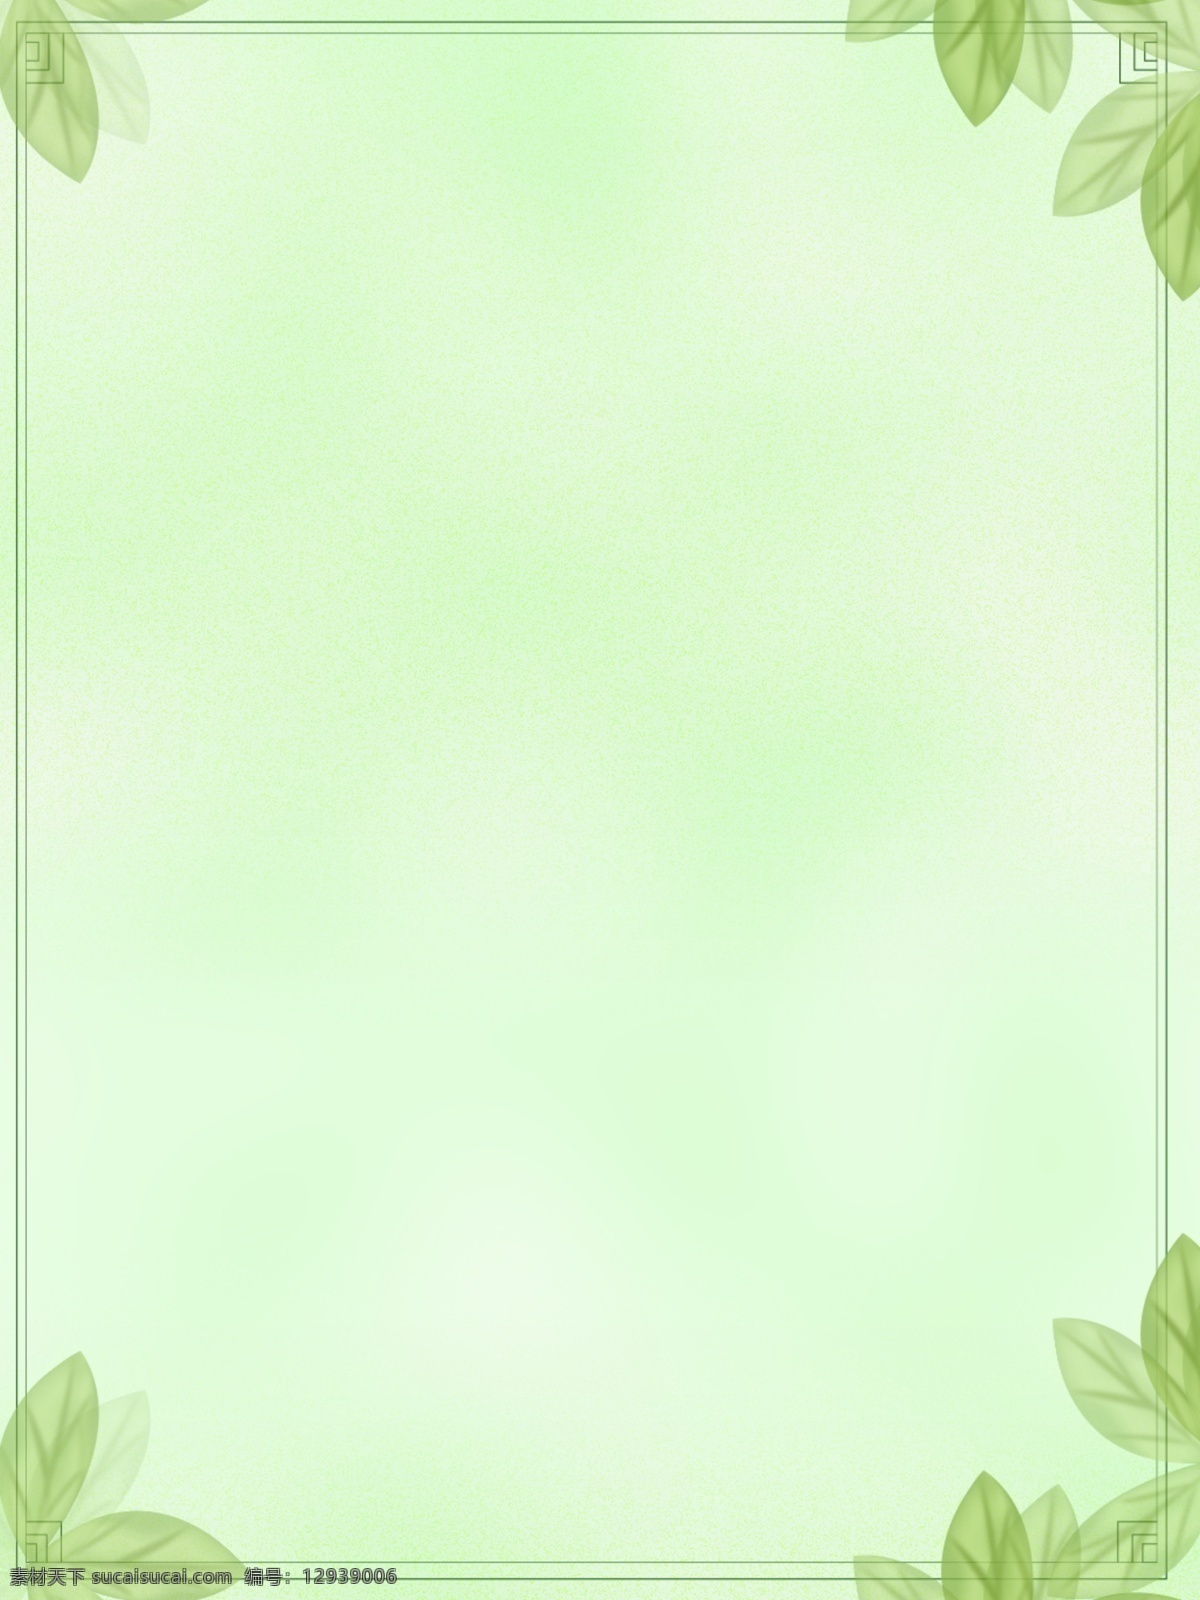 花枝 绿叶 边框 绿色 背景 素材图片 背景素材 广告背景 绿色背景 鸟儿 清新 手绘植物